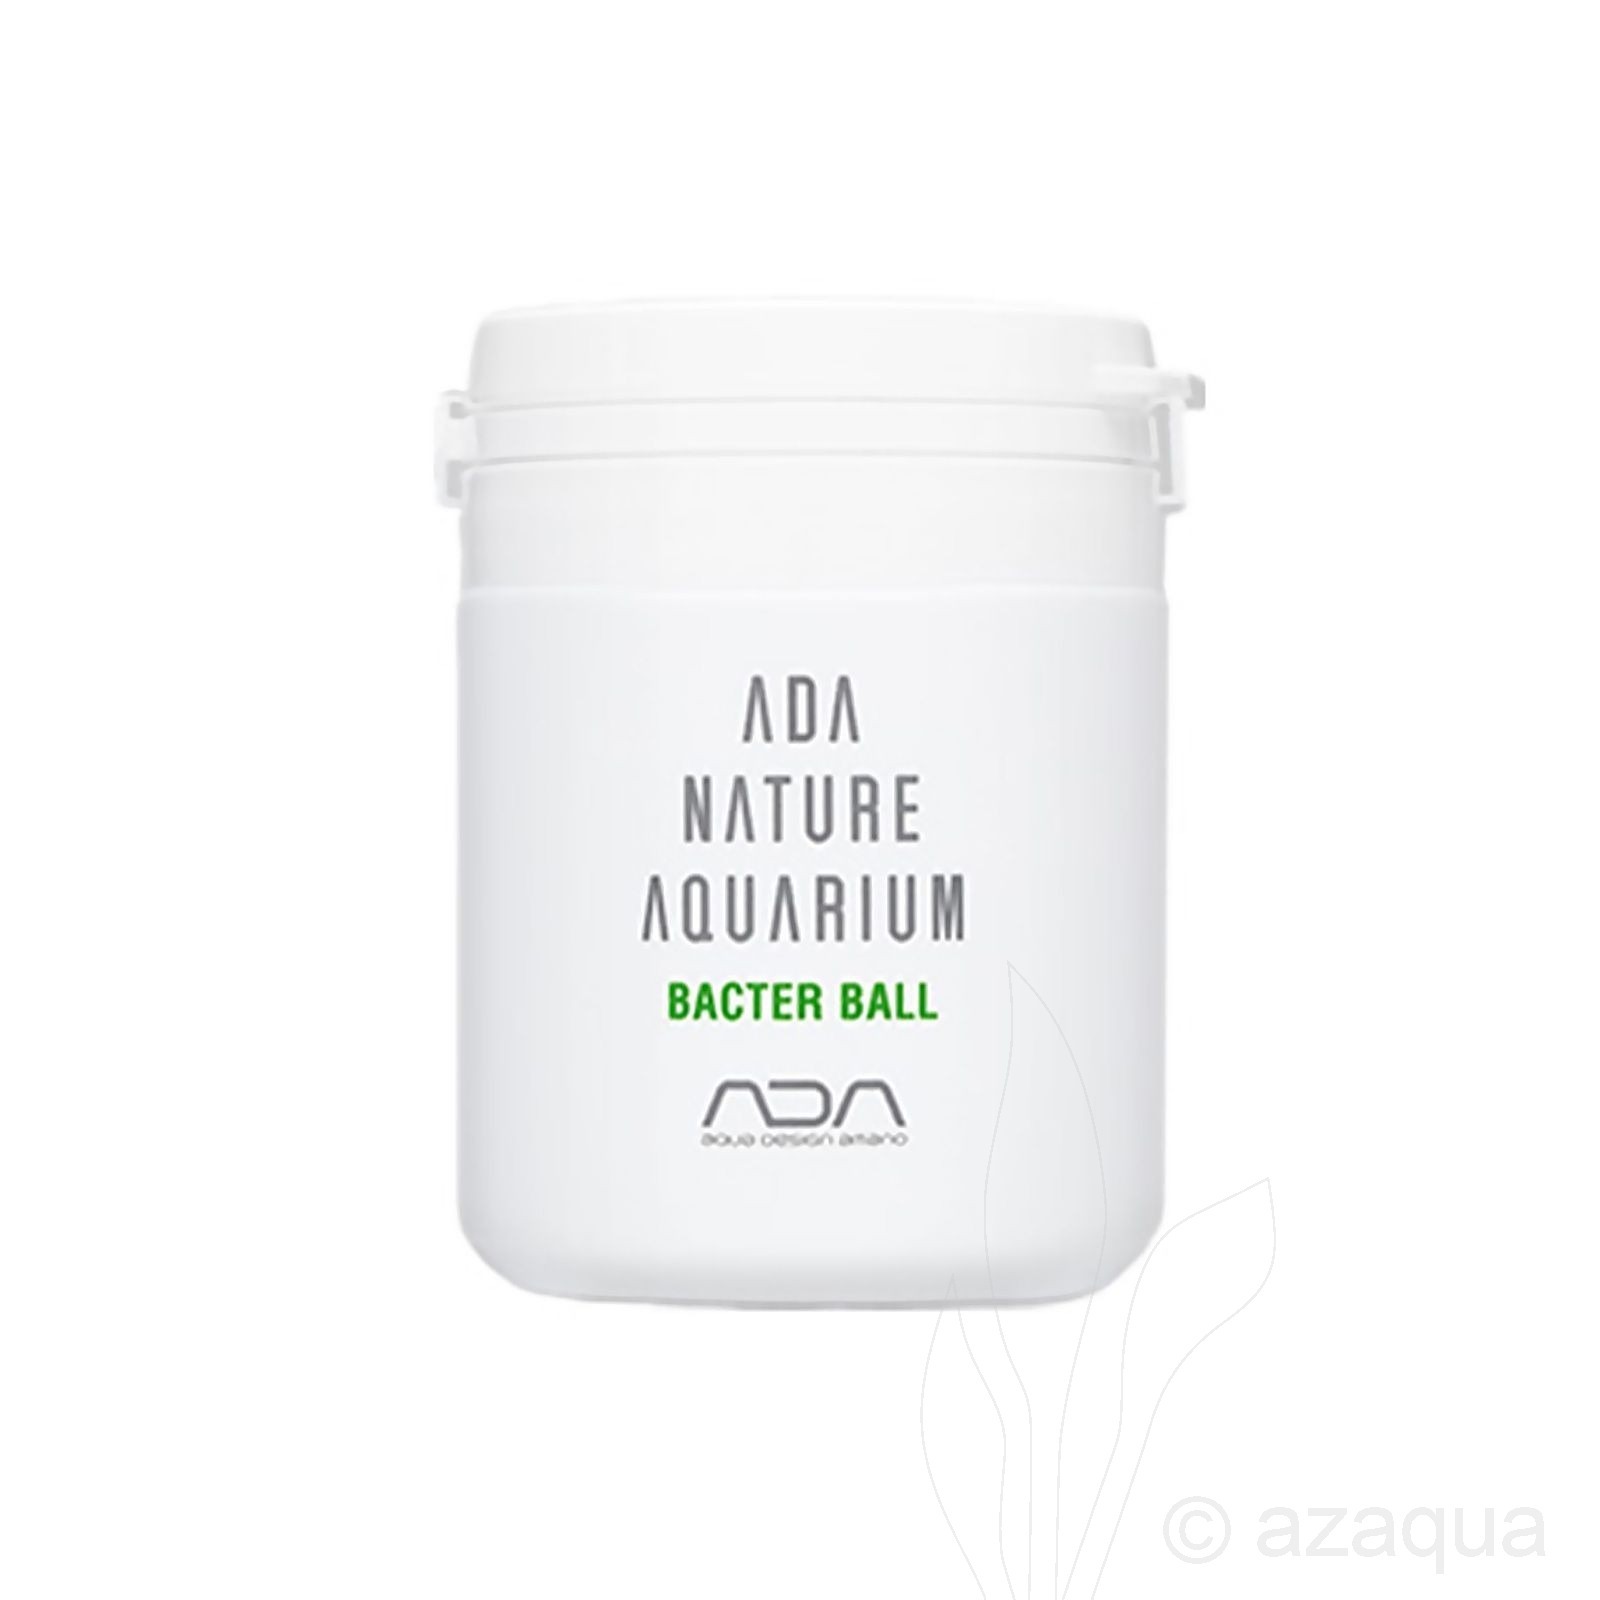 ADA Bacter Ball - beneficial bacteria for aquarium